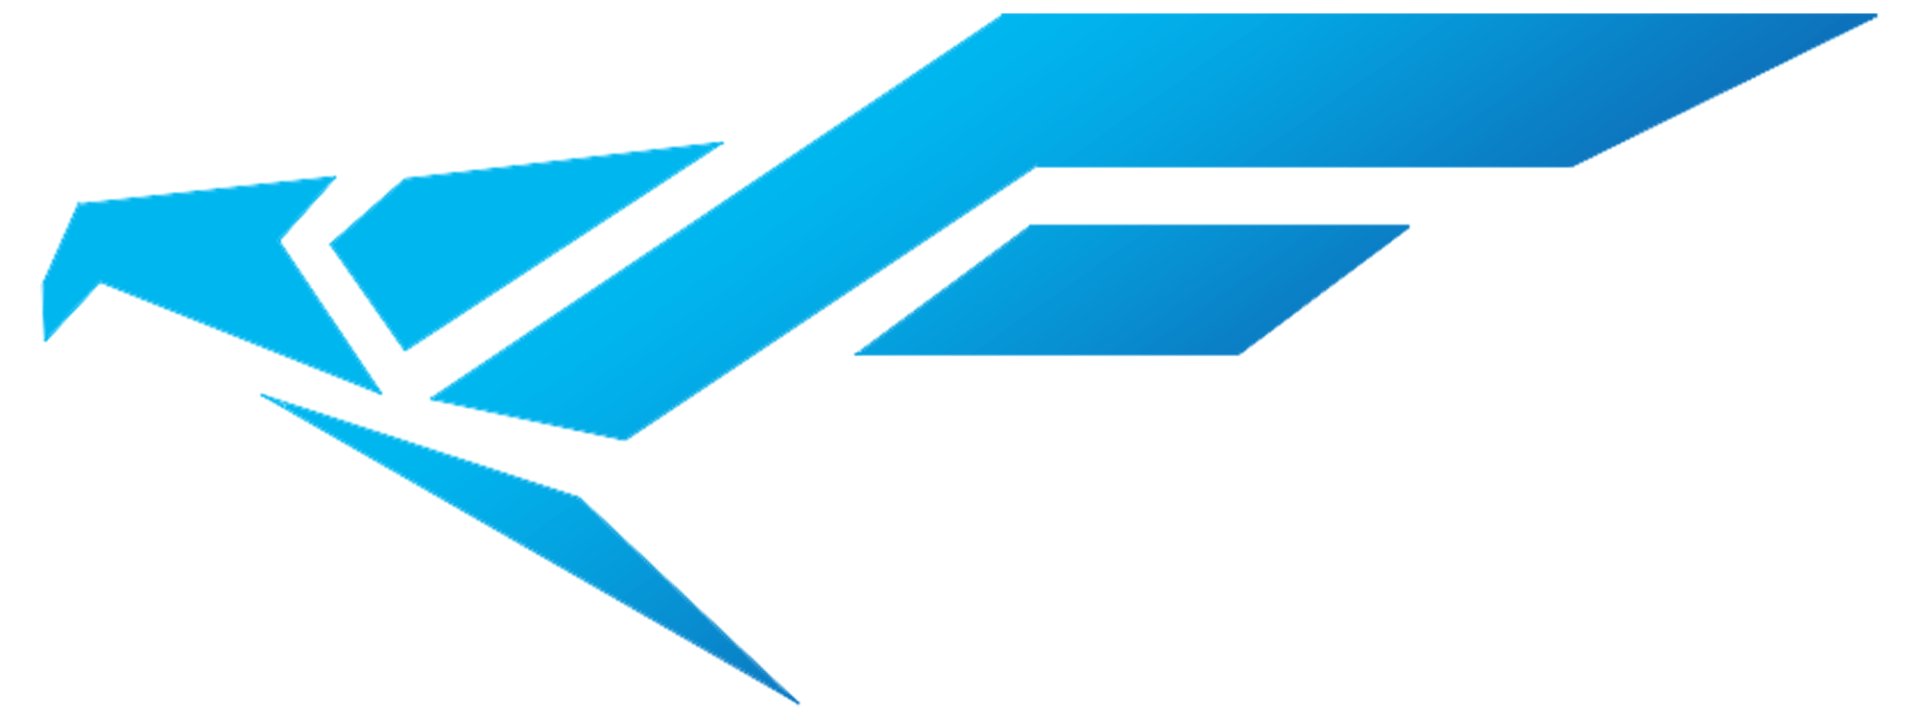 Falconics Marketing Agency Logo ™️